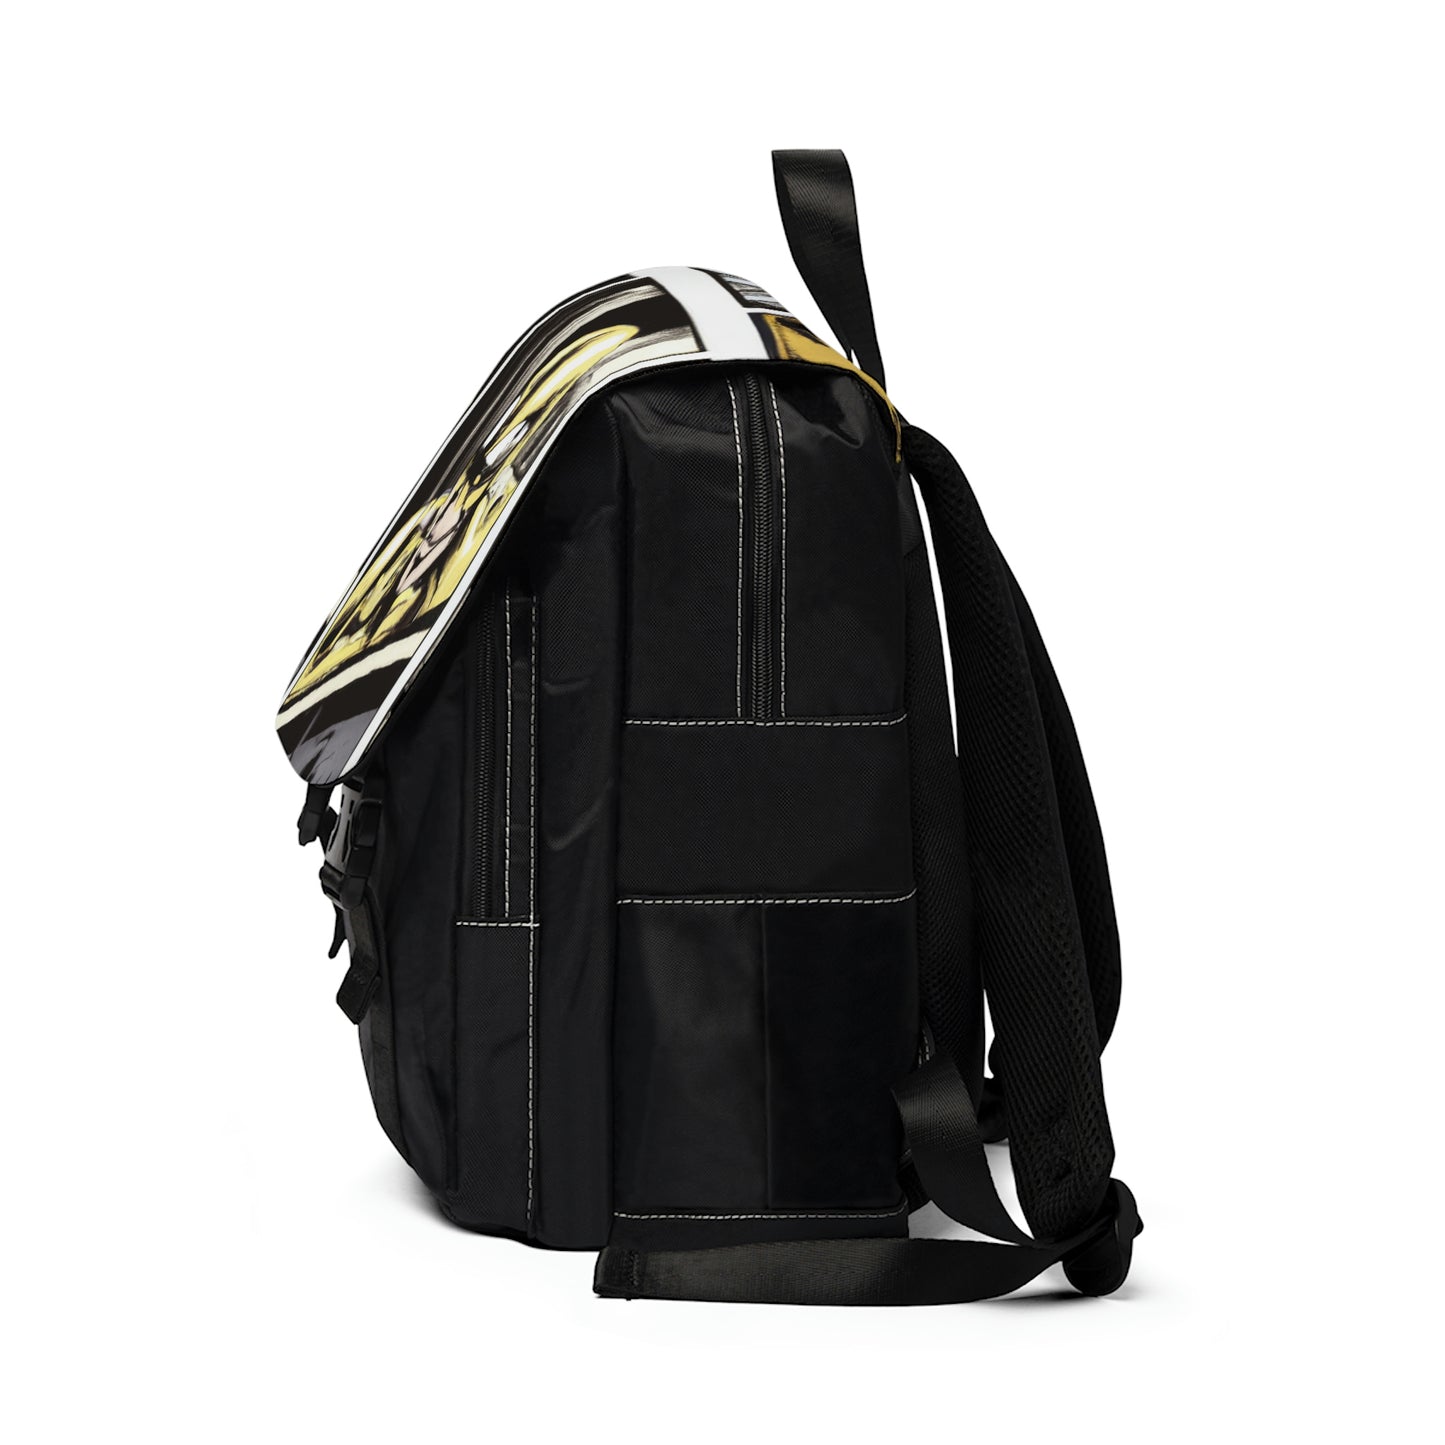 Chanelo - Comic Book Shoulder Travel Backpack Bag